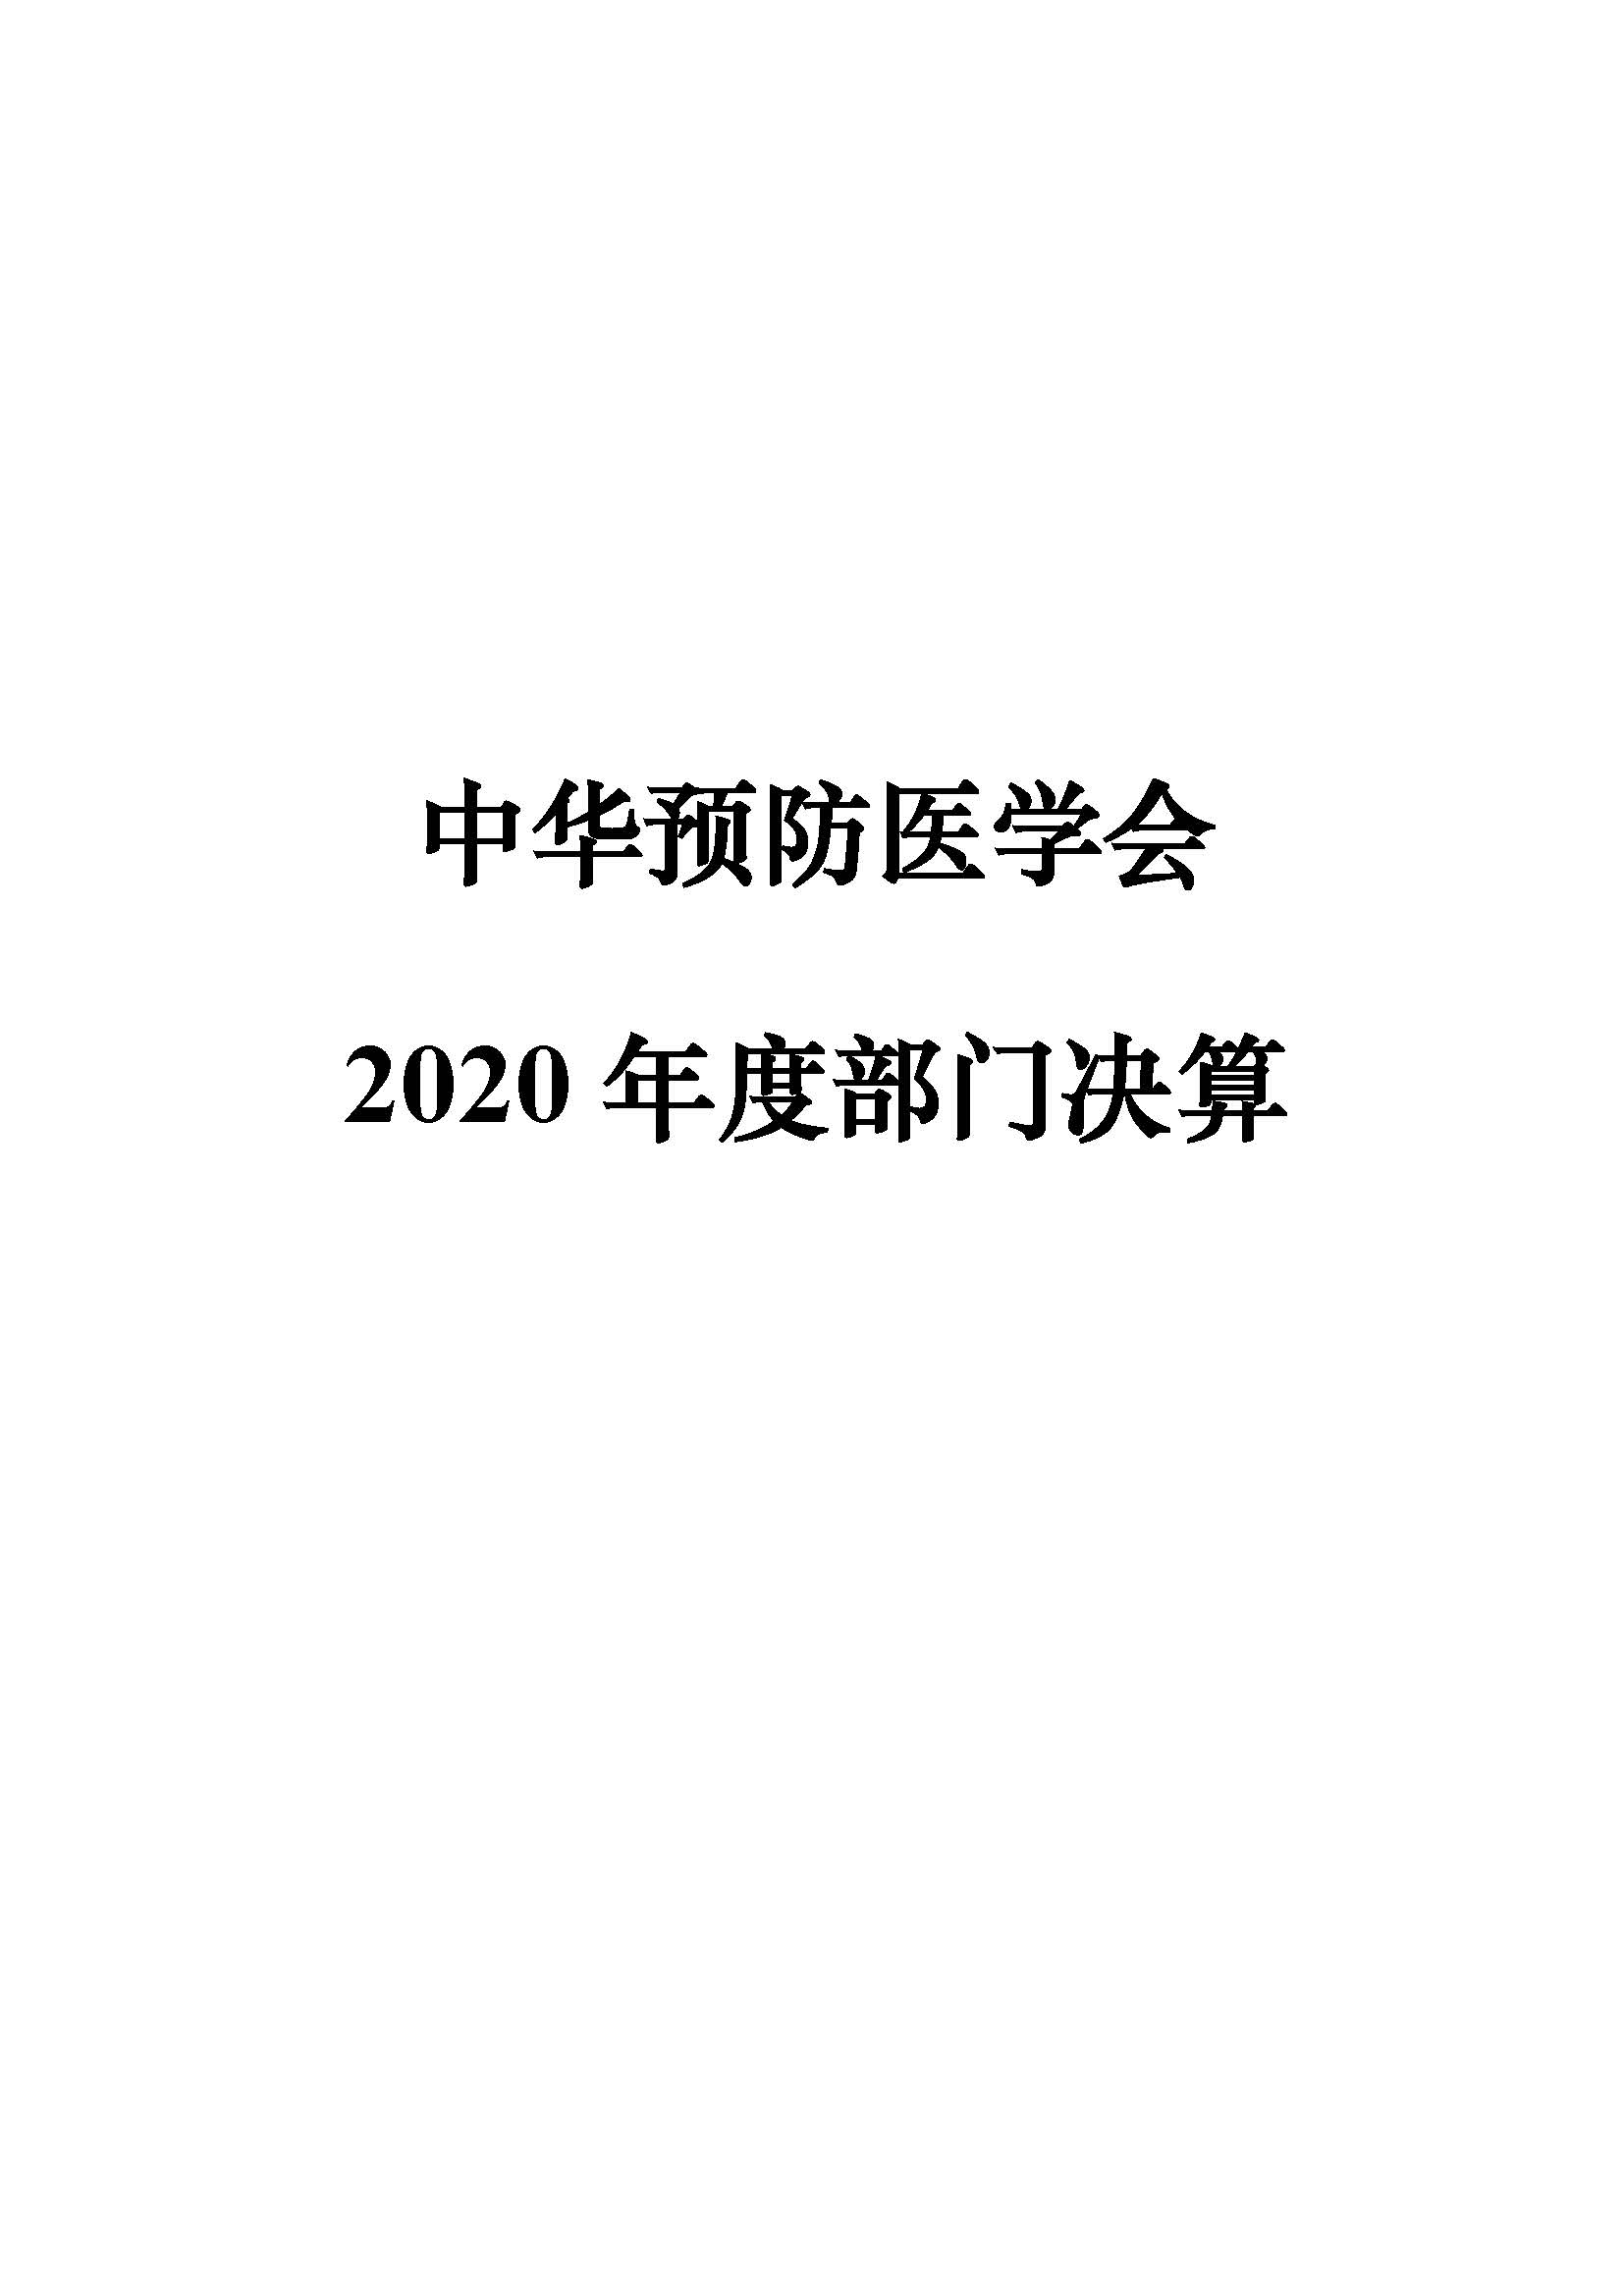 中华预防医学会2020年部门决算公开_页面_01